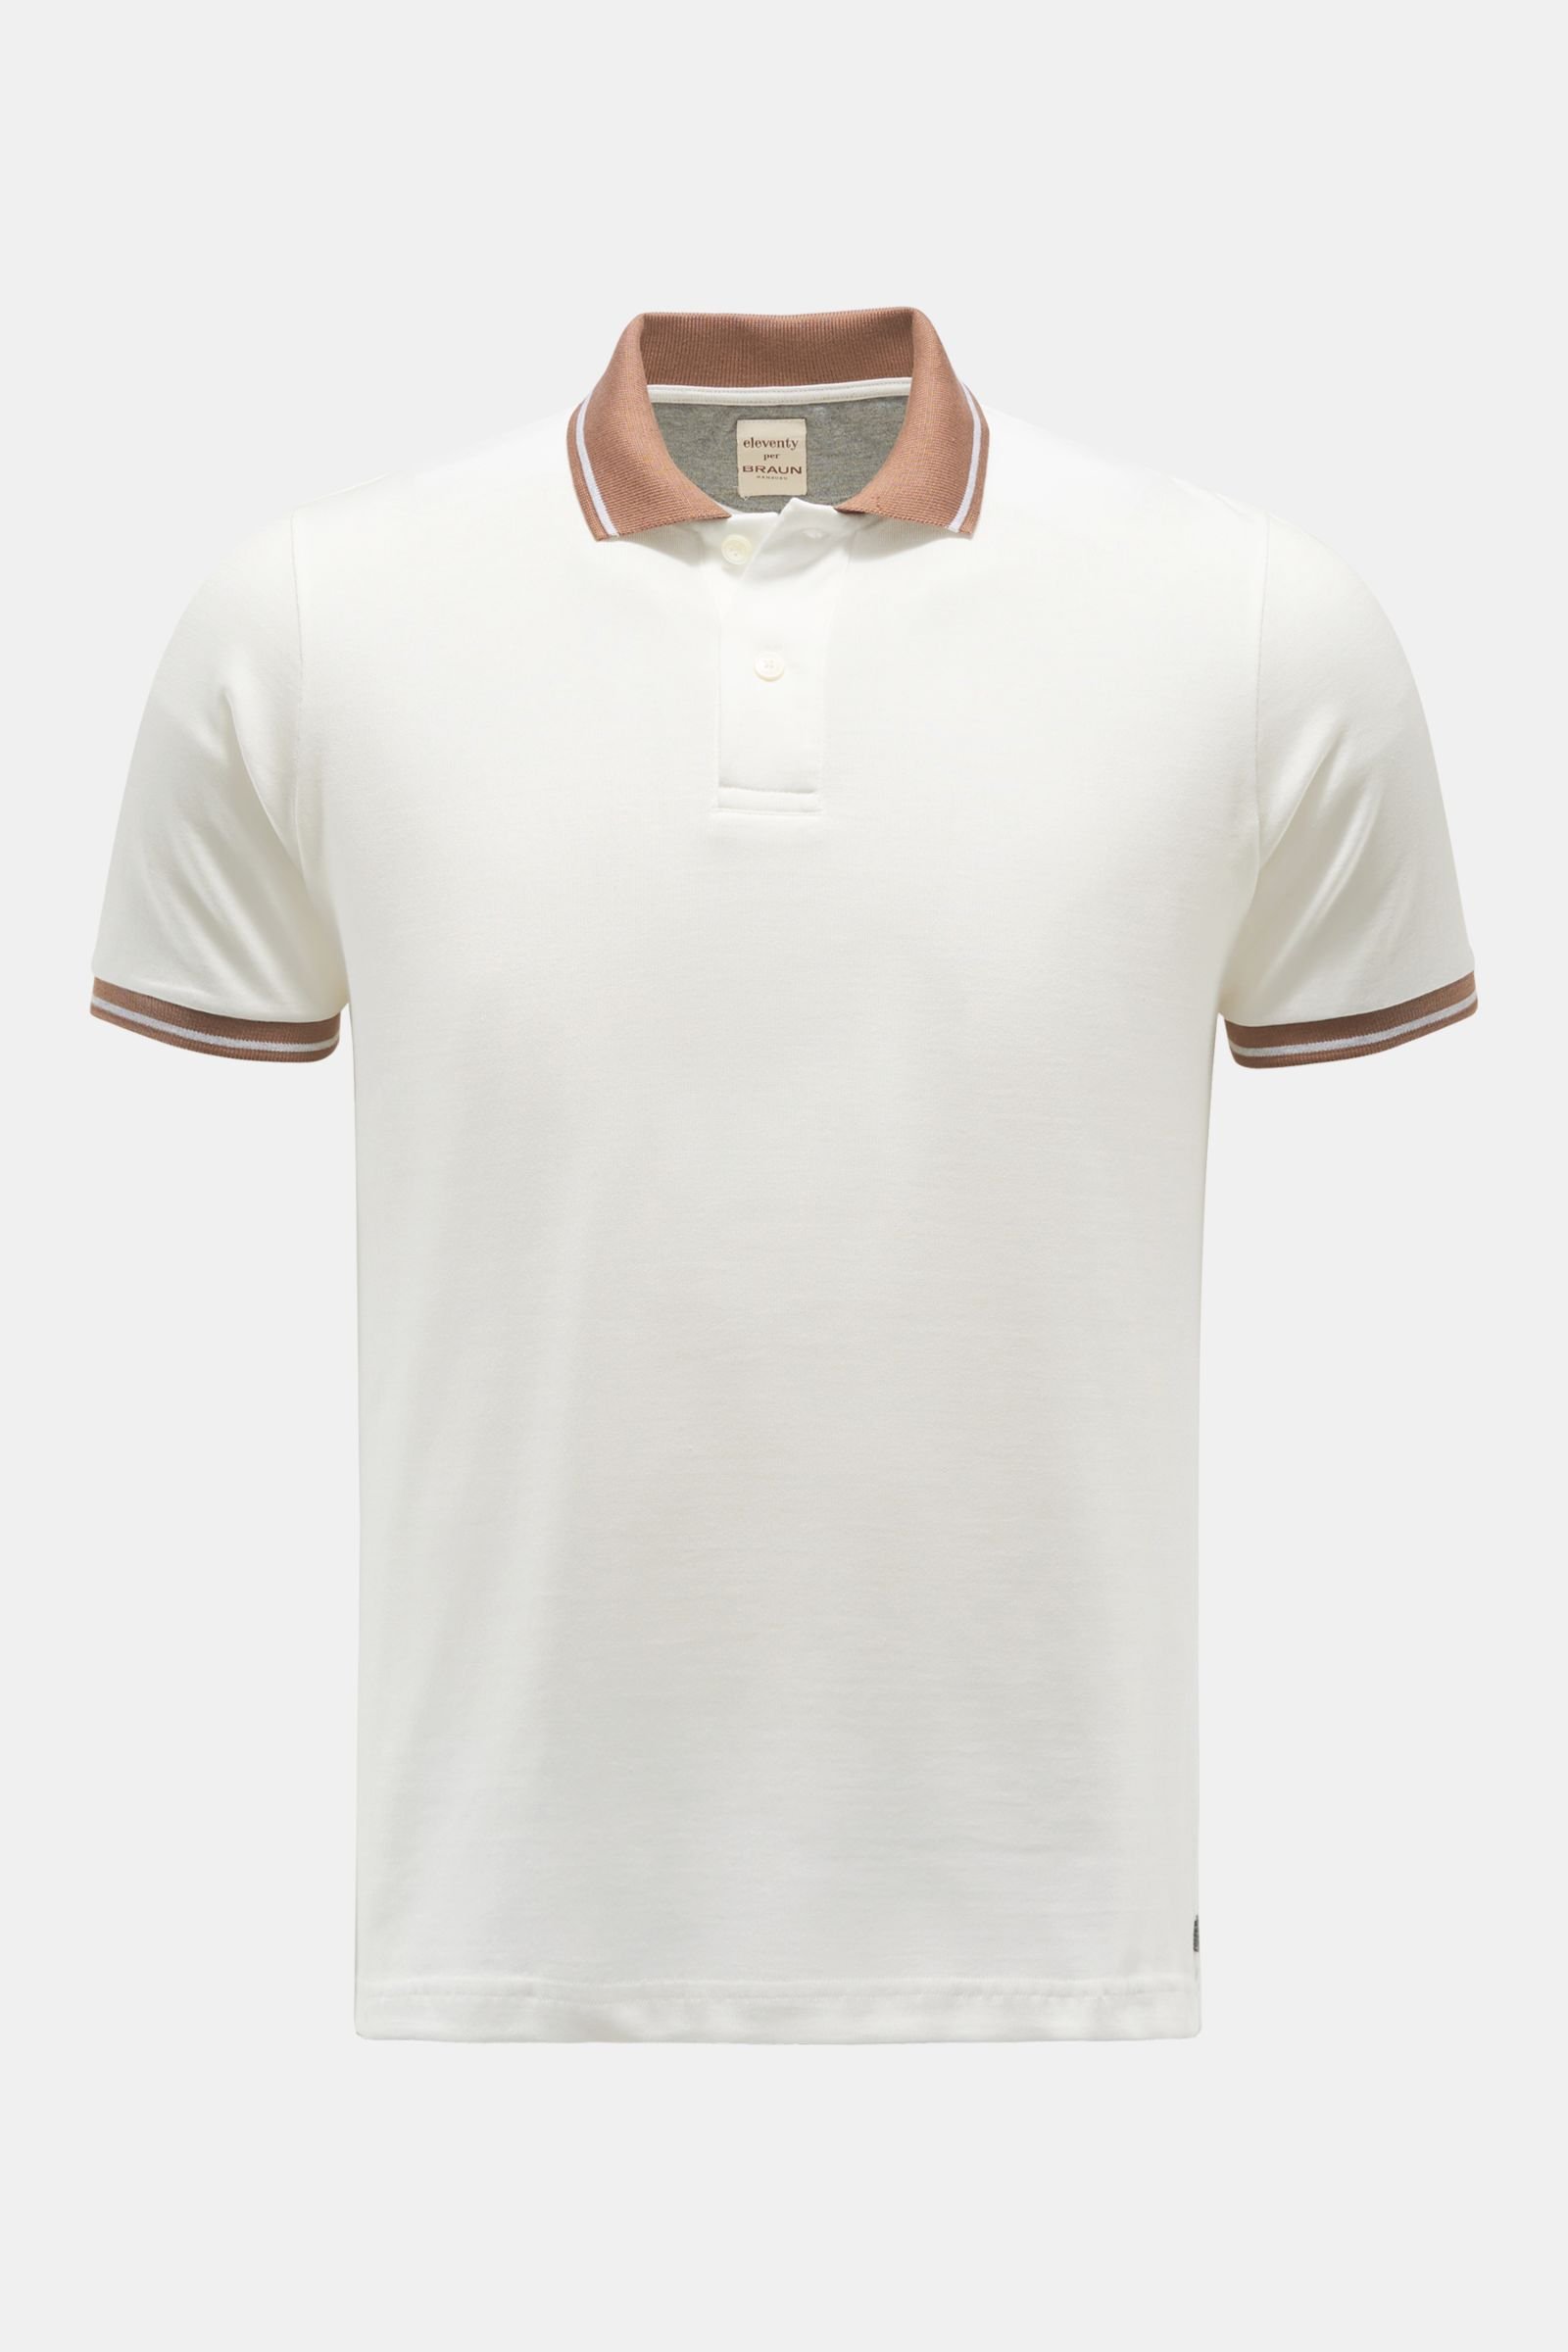 Jersey-Poloshirt weiß/braun